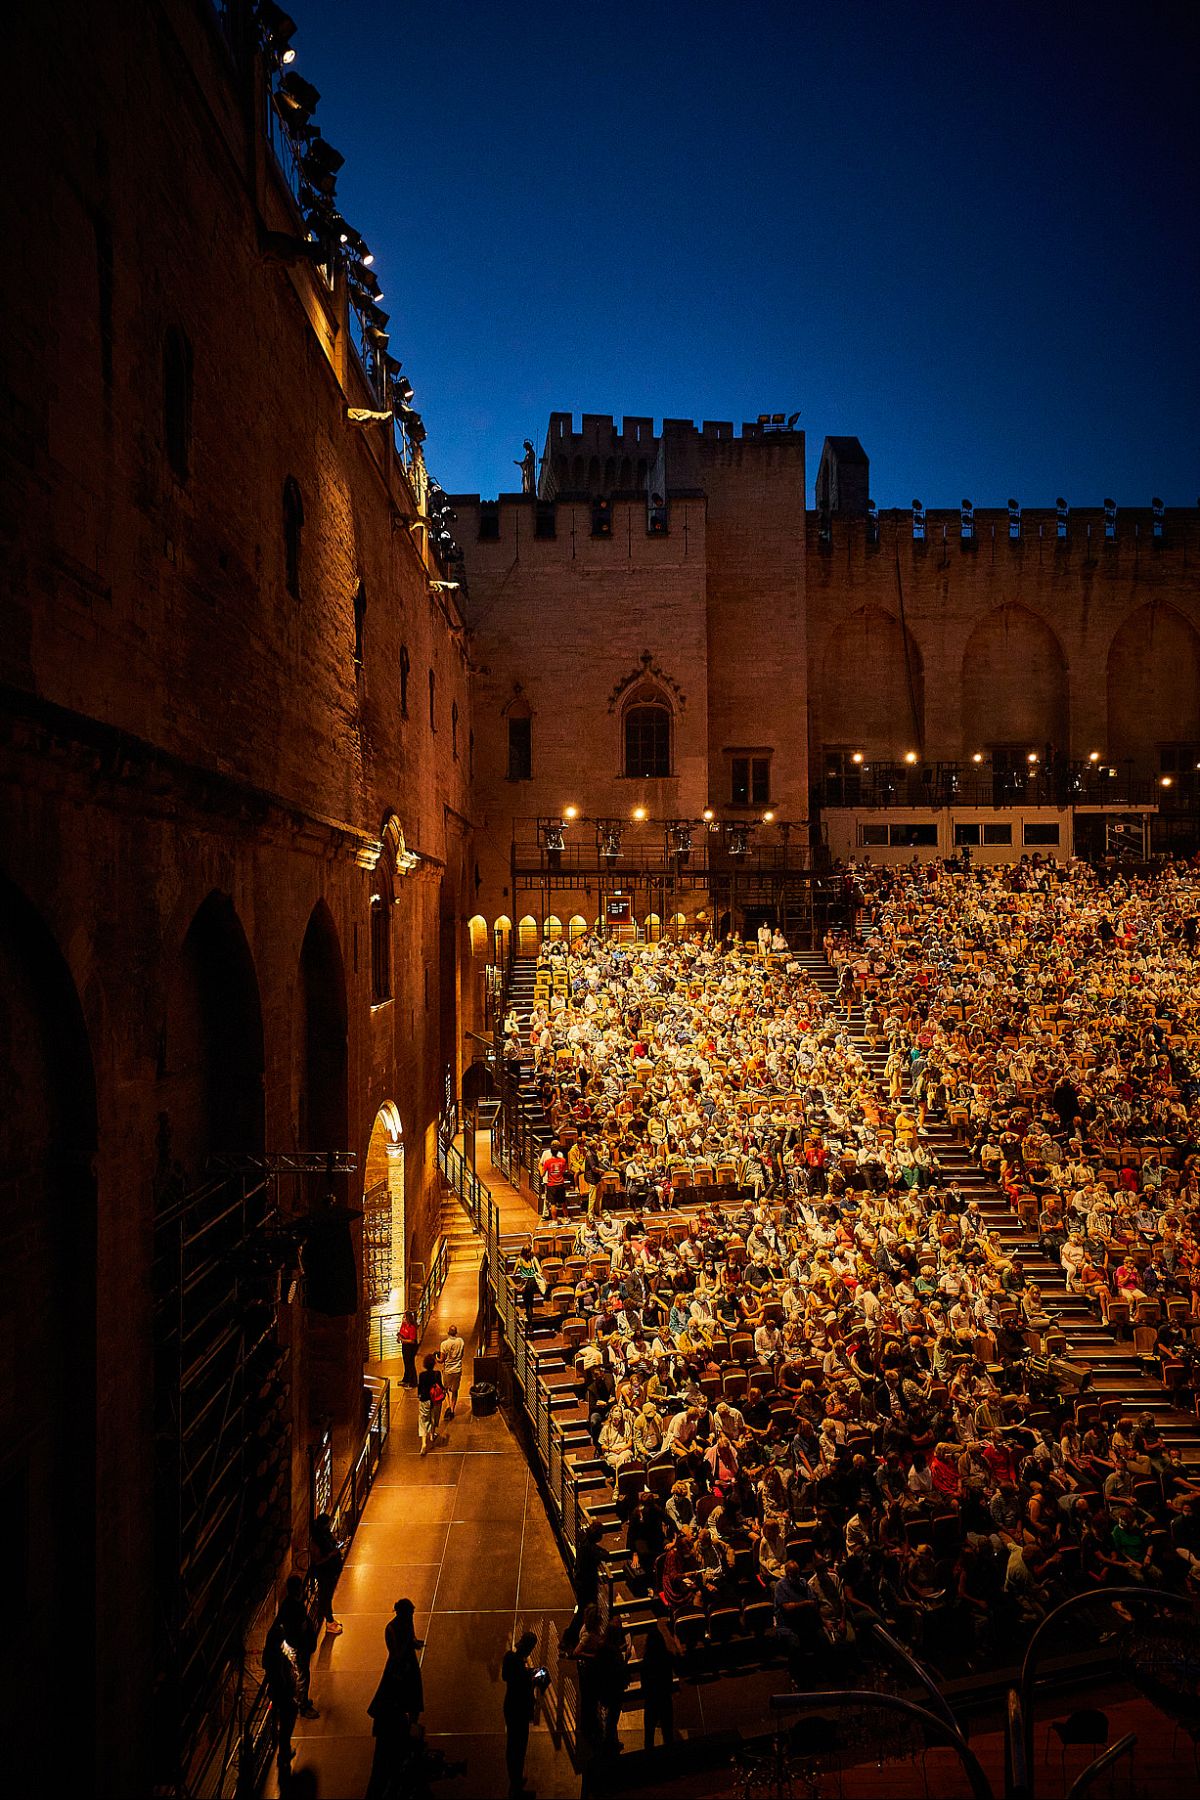 Festival d’Avignon: 'We won’t let political mistakes build walls ...